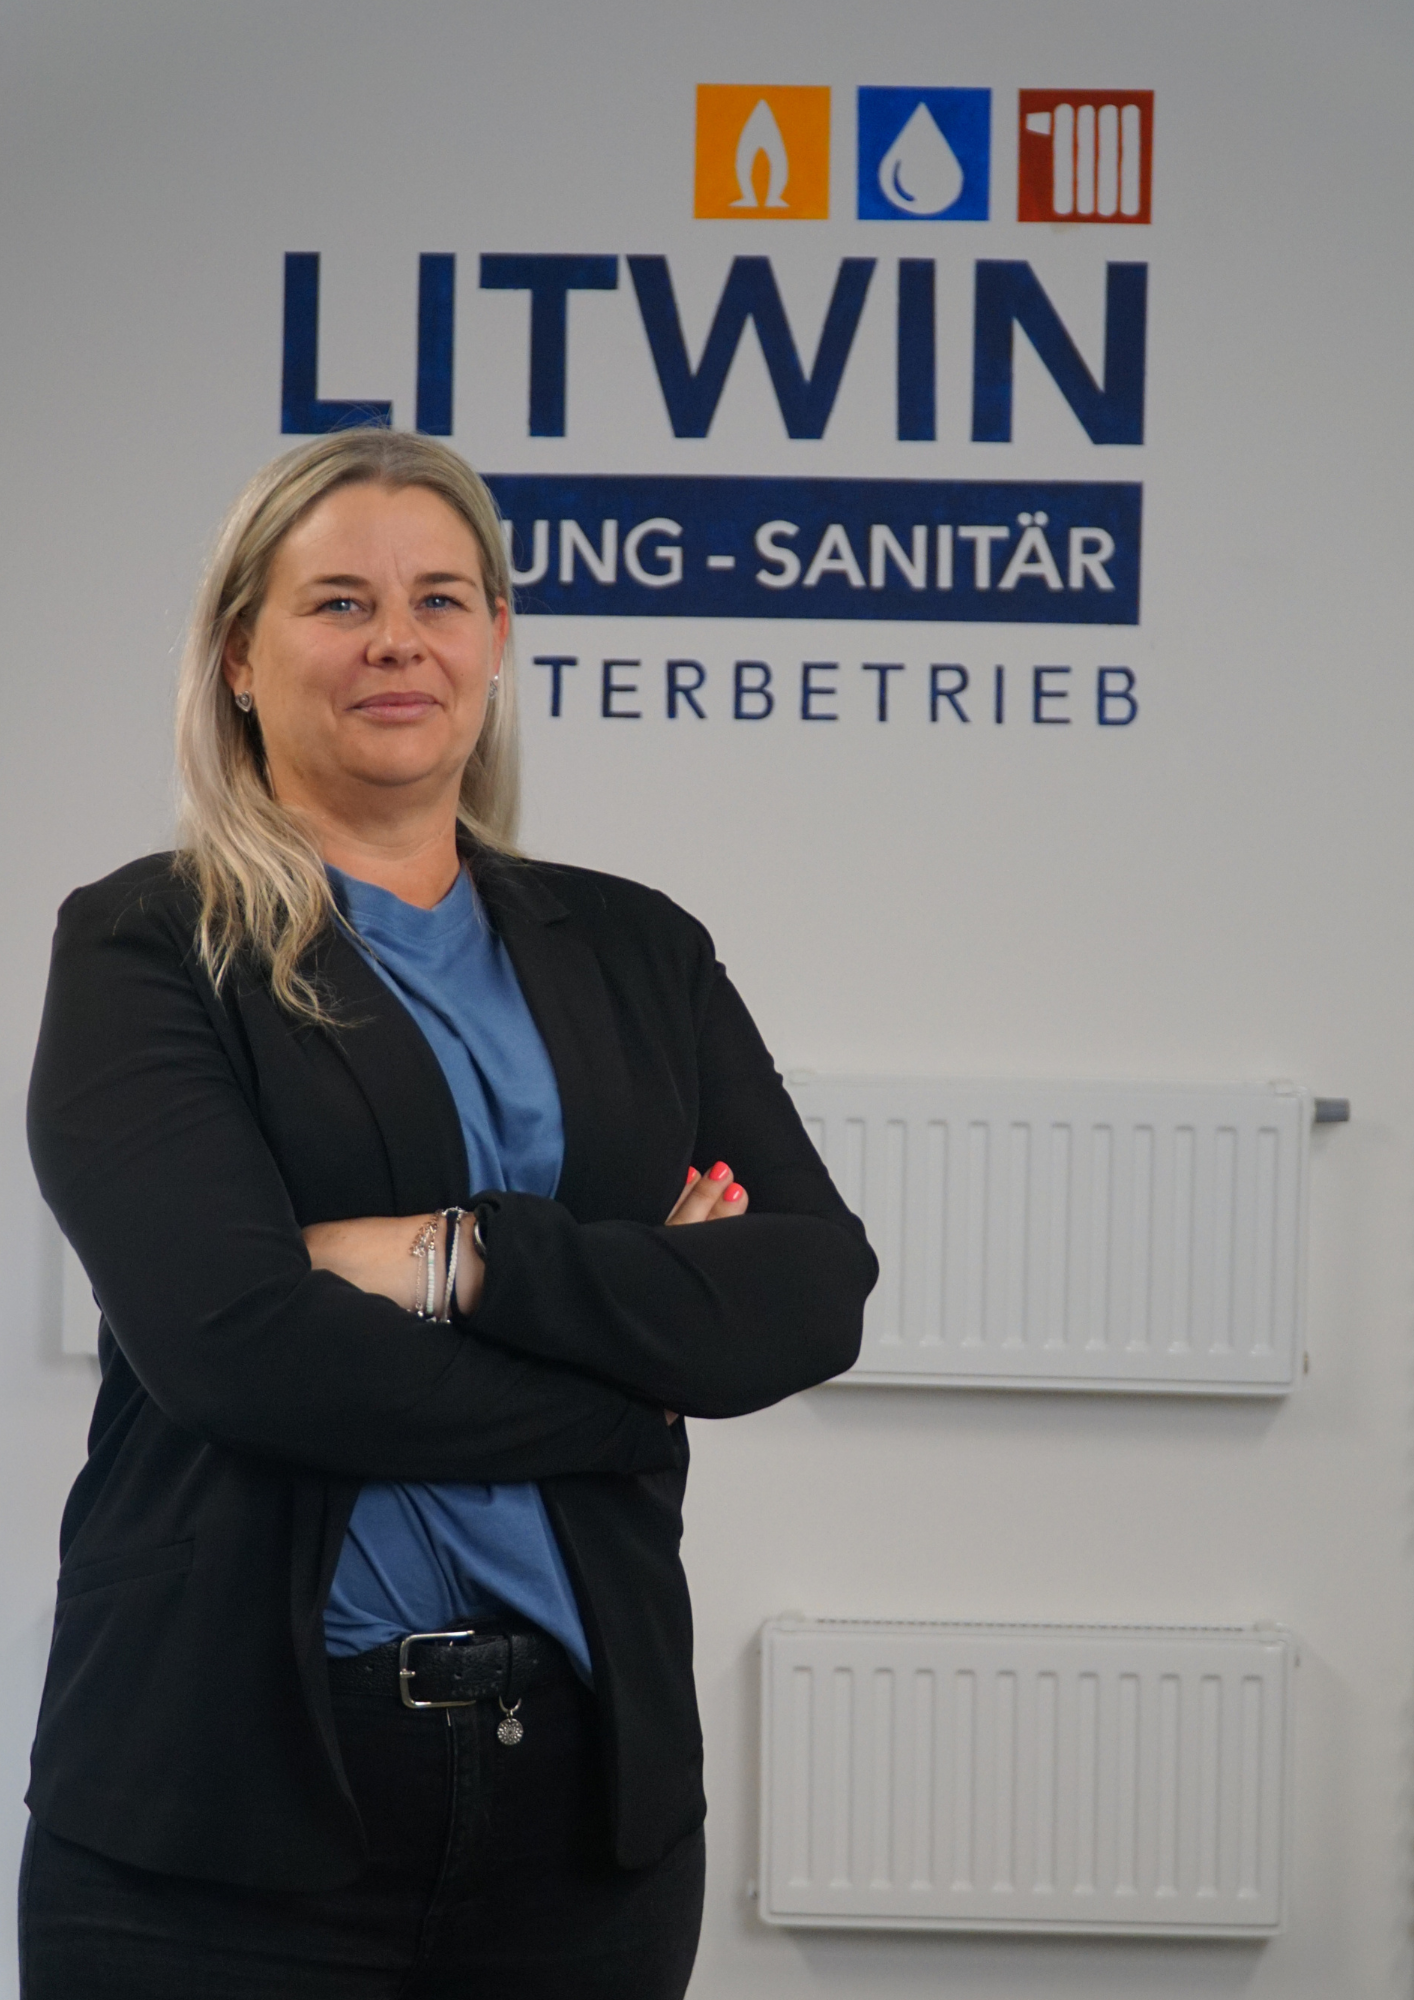 Sabrina Litwin (Prokuristin) vor dem Logo von Litwin Heizung Sanitär. Im Hintergrund sind verschiedene Heizkörper.